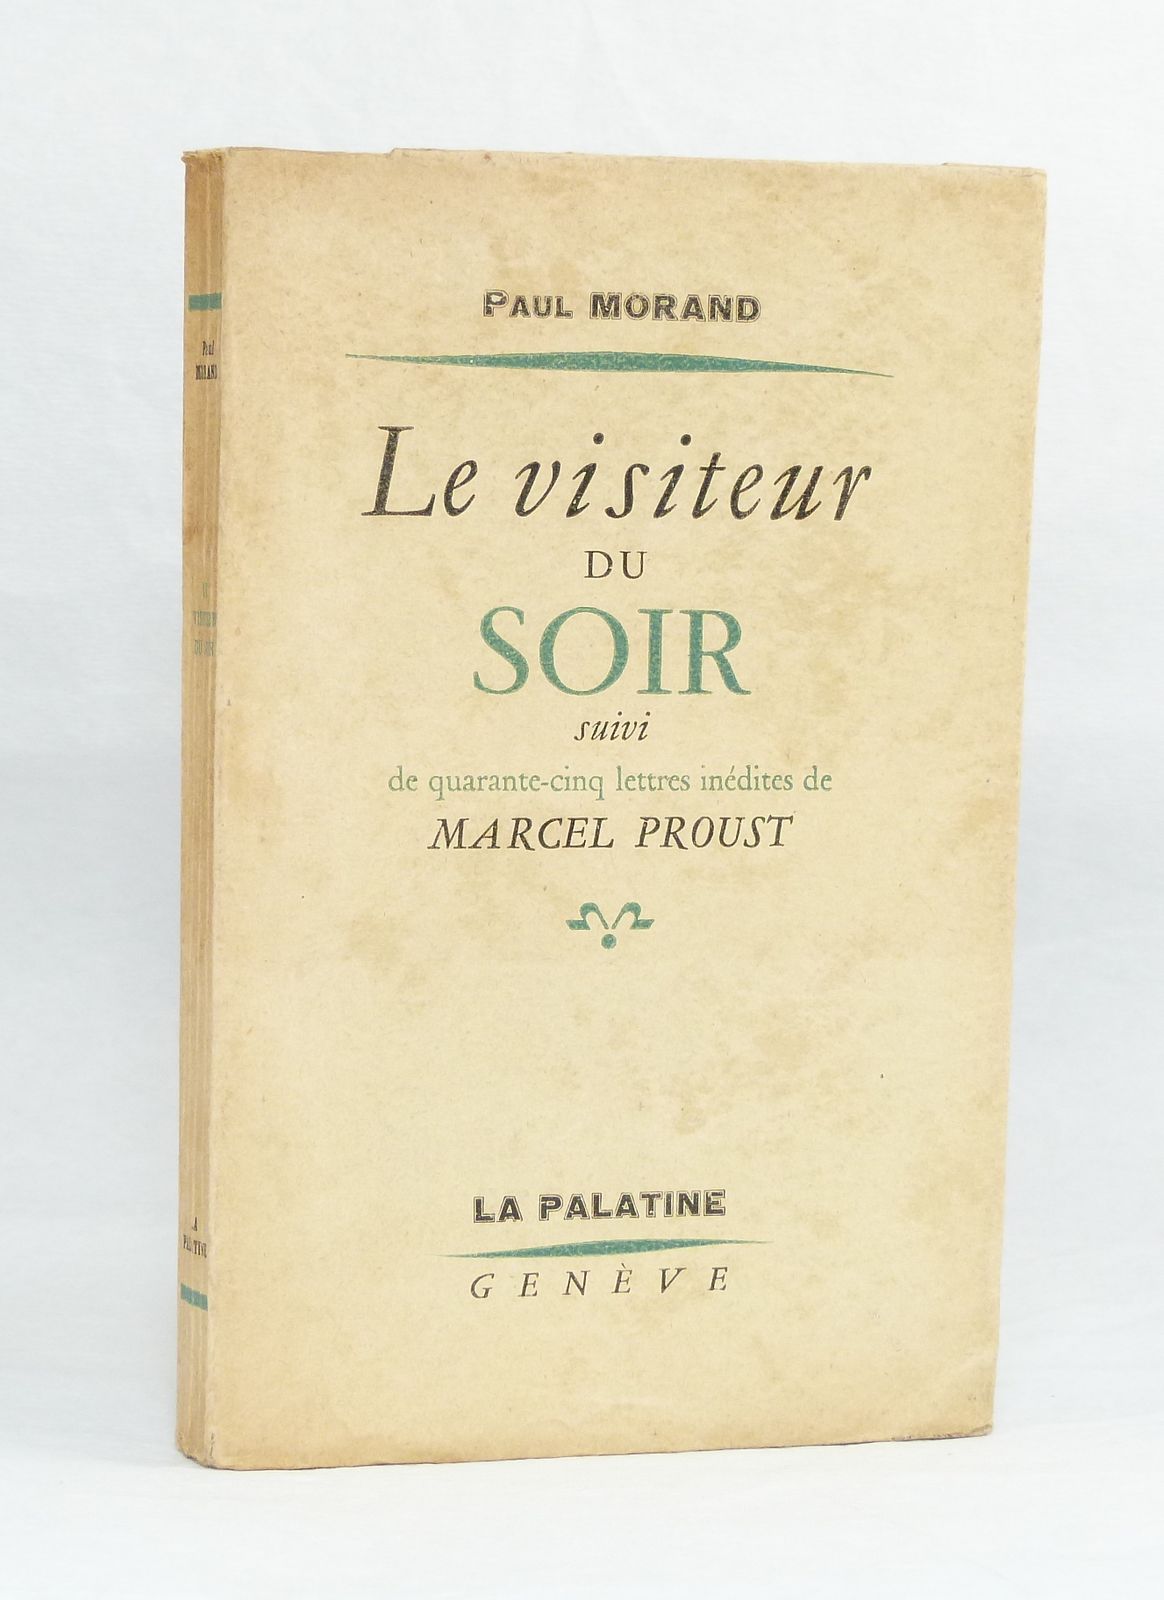 Le visiteur du soir, Suivi de quarante-cinq lettres inédites de Marcel Proust.